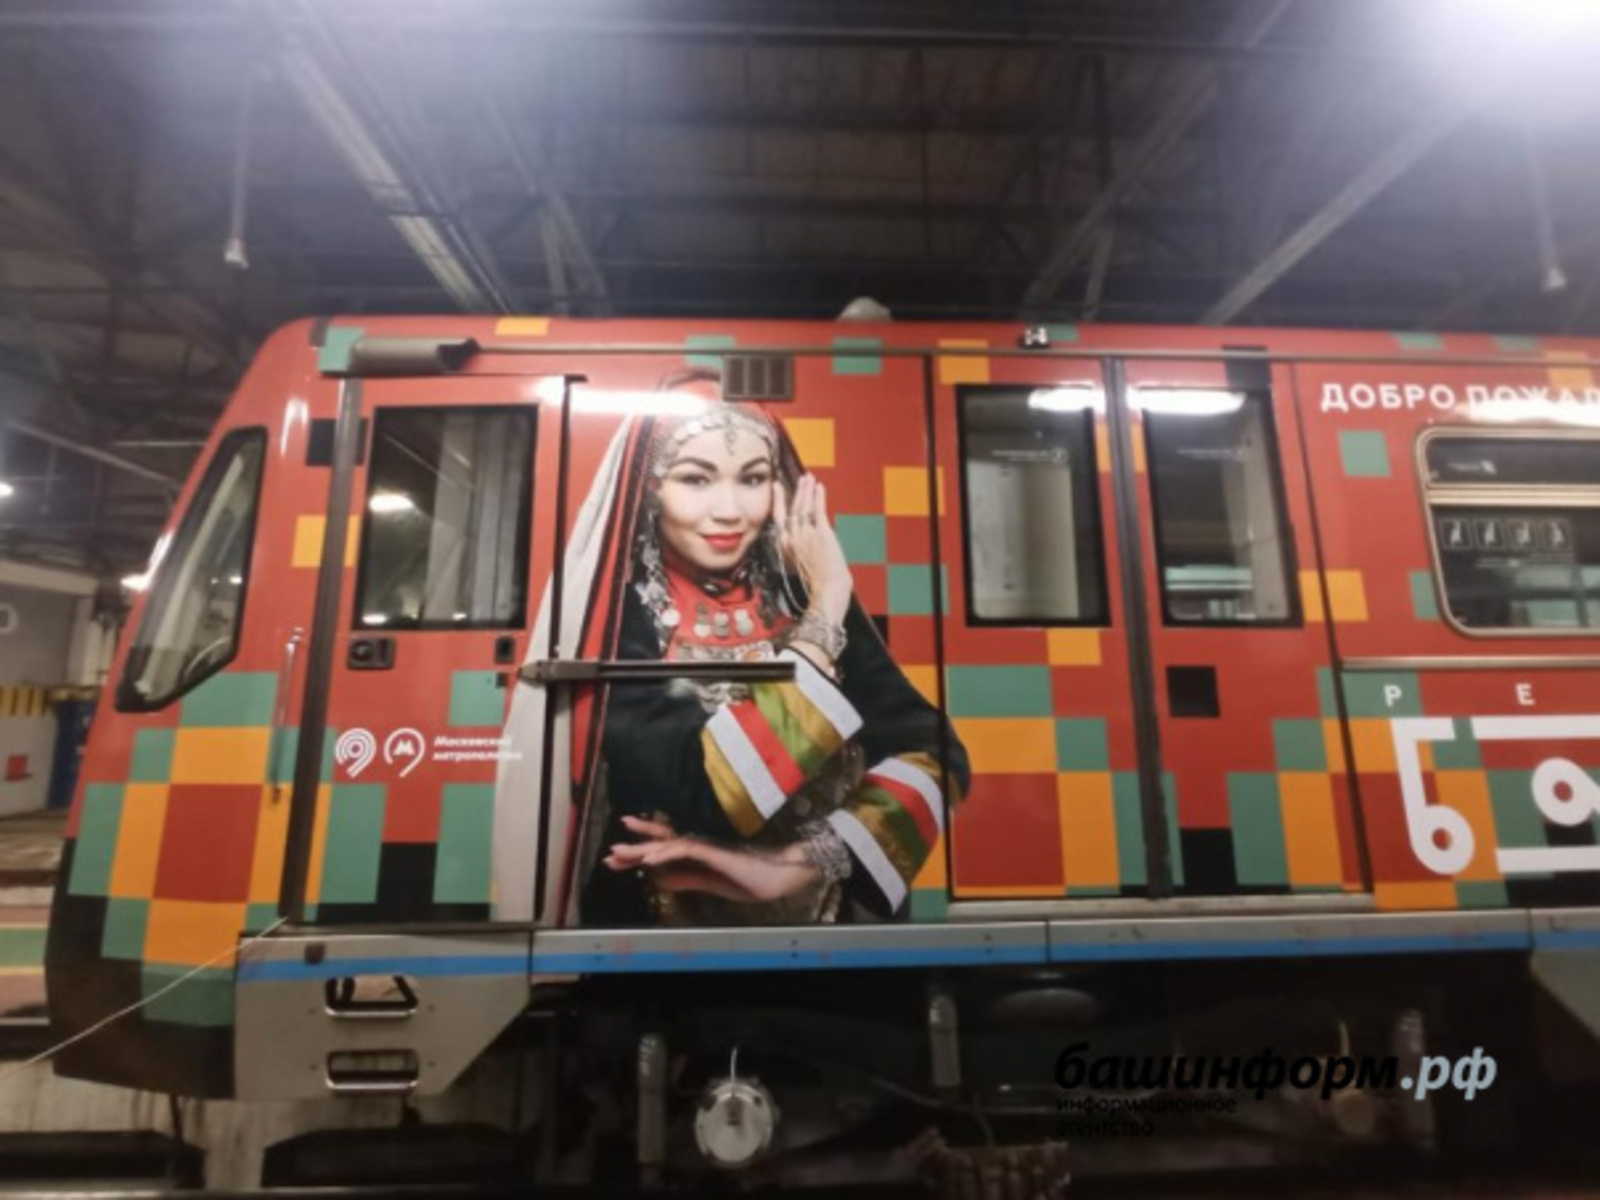 Тематический поезд «Алга, Башкортостан!» стал курсировать в московском метрополитене